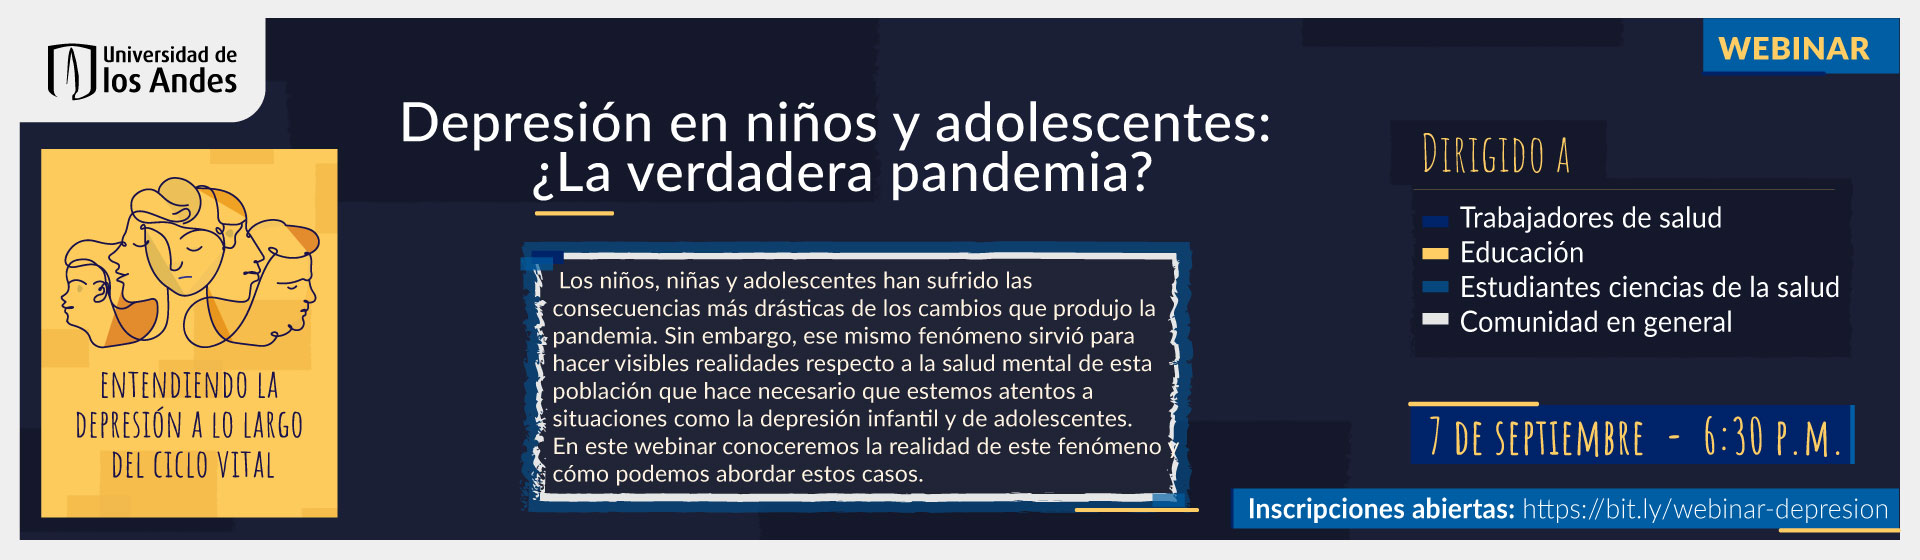 Depresión en niños y adolescentes: ¿la verdadera pandemia?